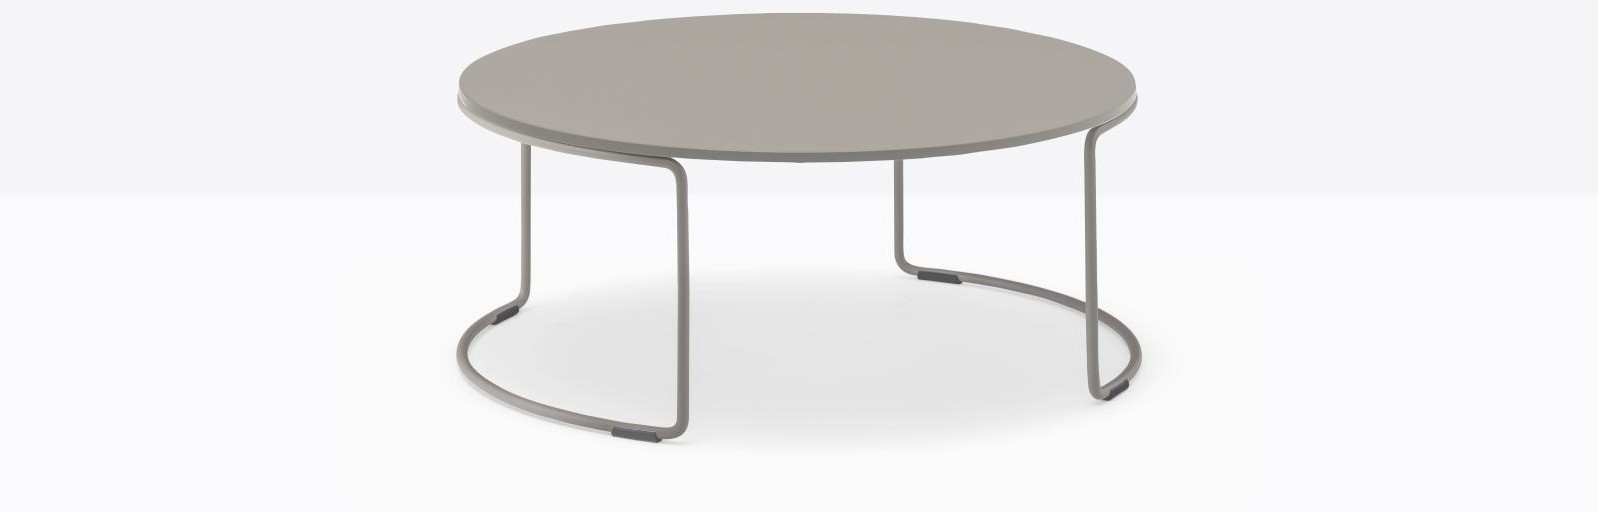 Low - Ronde salontafel met volkern of blad Ø59 en rond doorlopend buisframe h25 cm - Groen outdoor - Staal VE600E groen bij FP Collection